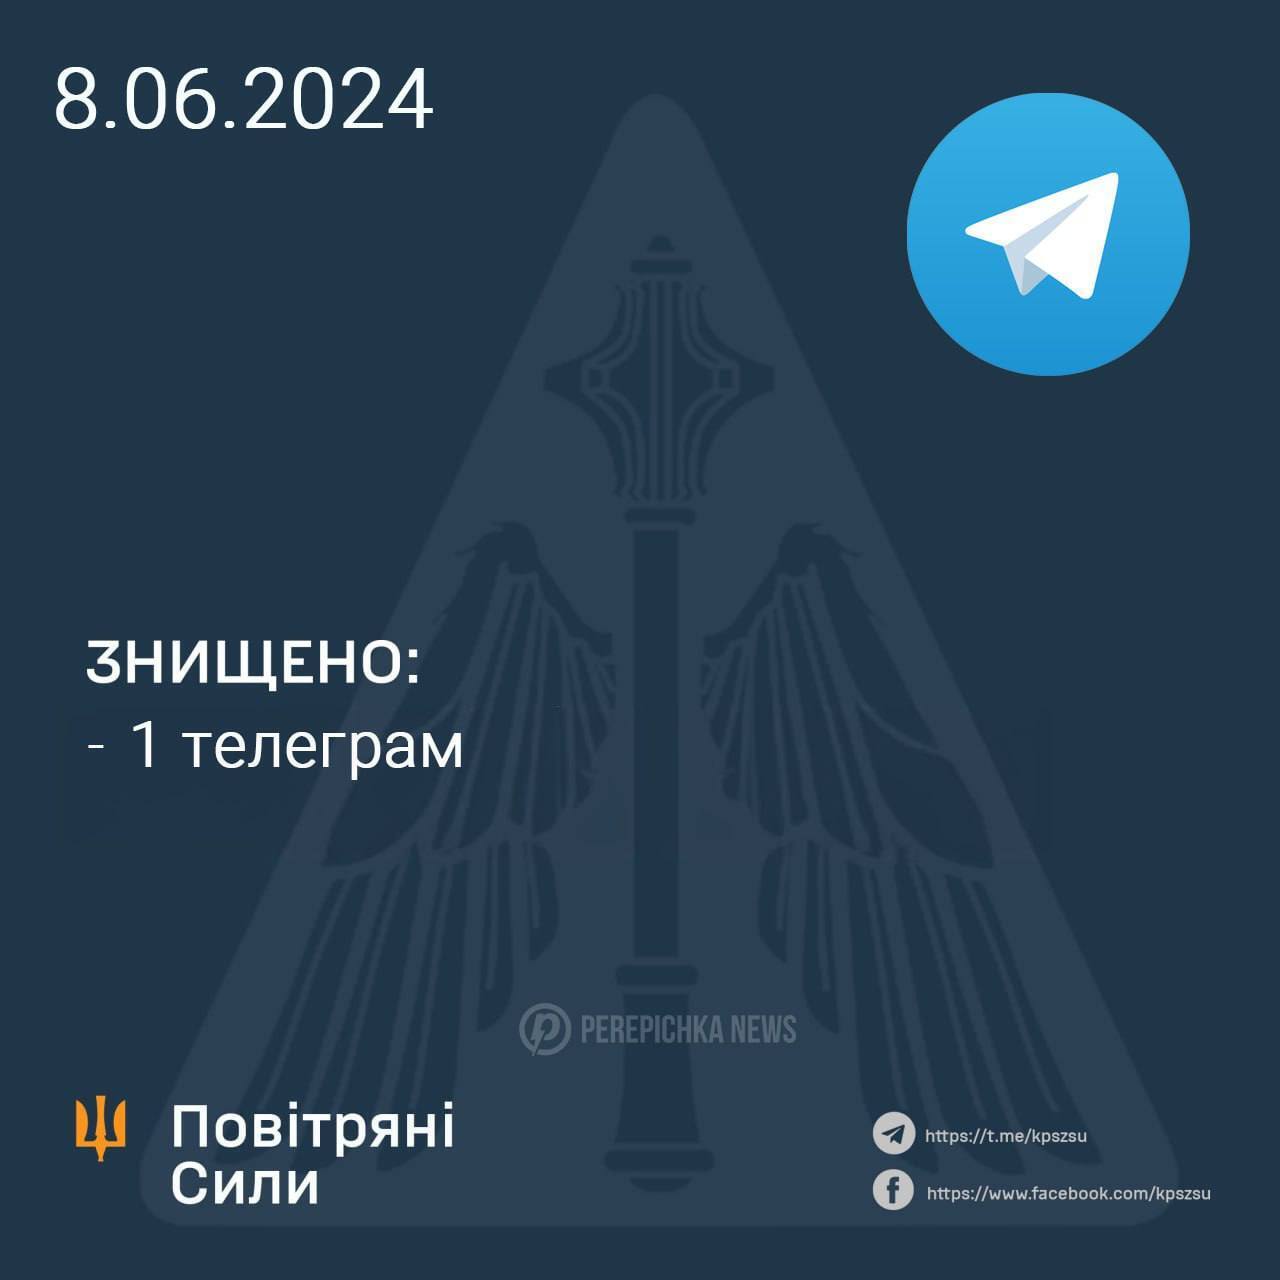 "Графіки відключень коли будуть?": як українці відреагували на збій у роботі Telegram. Фото
